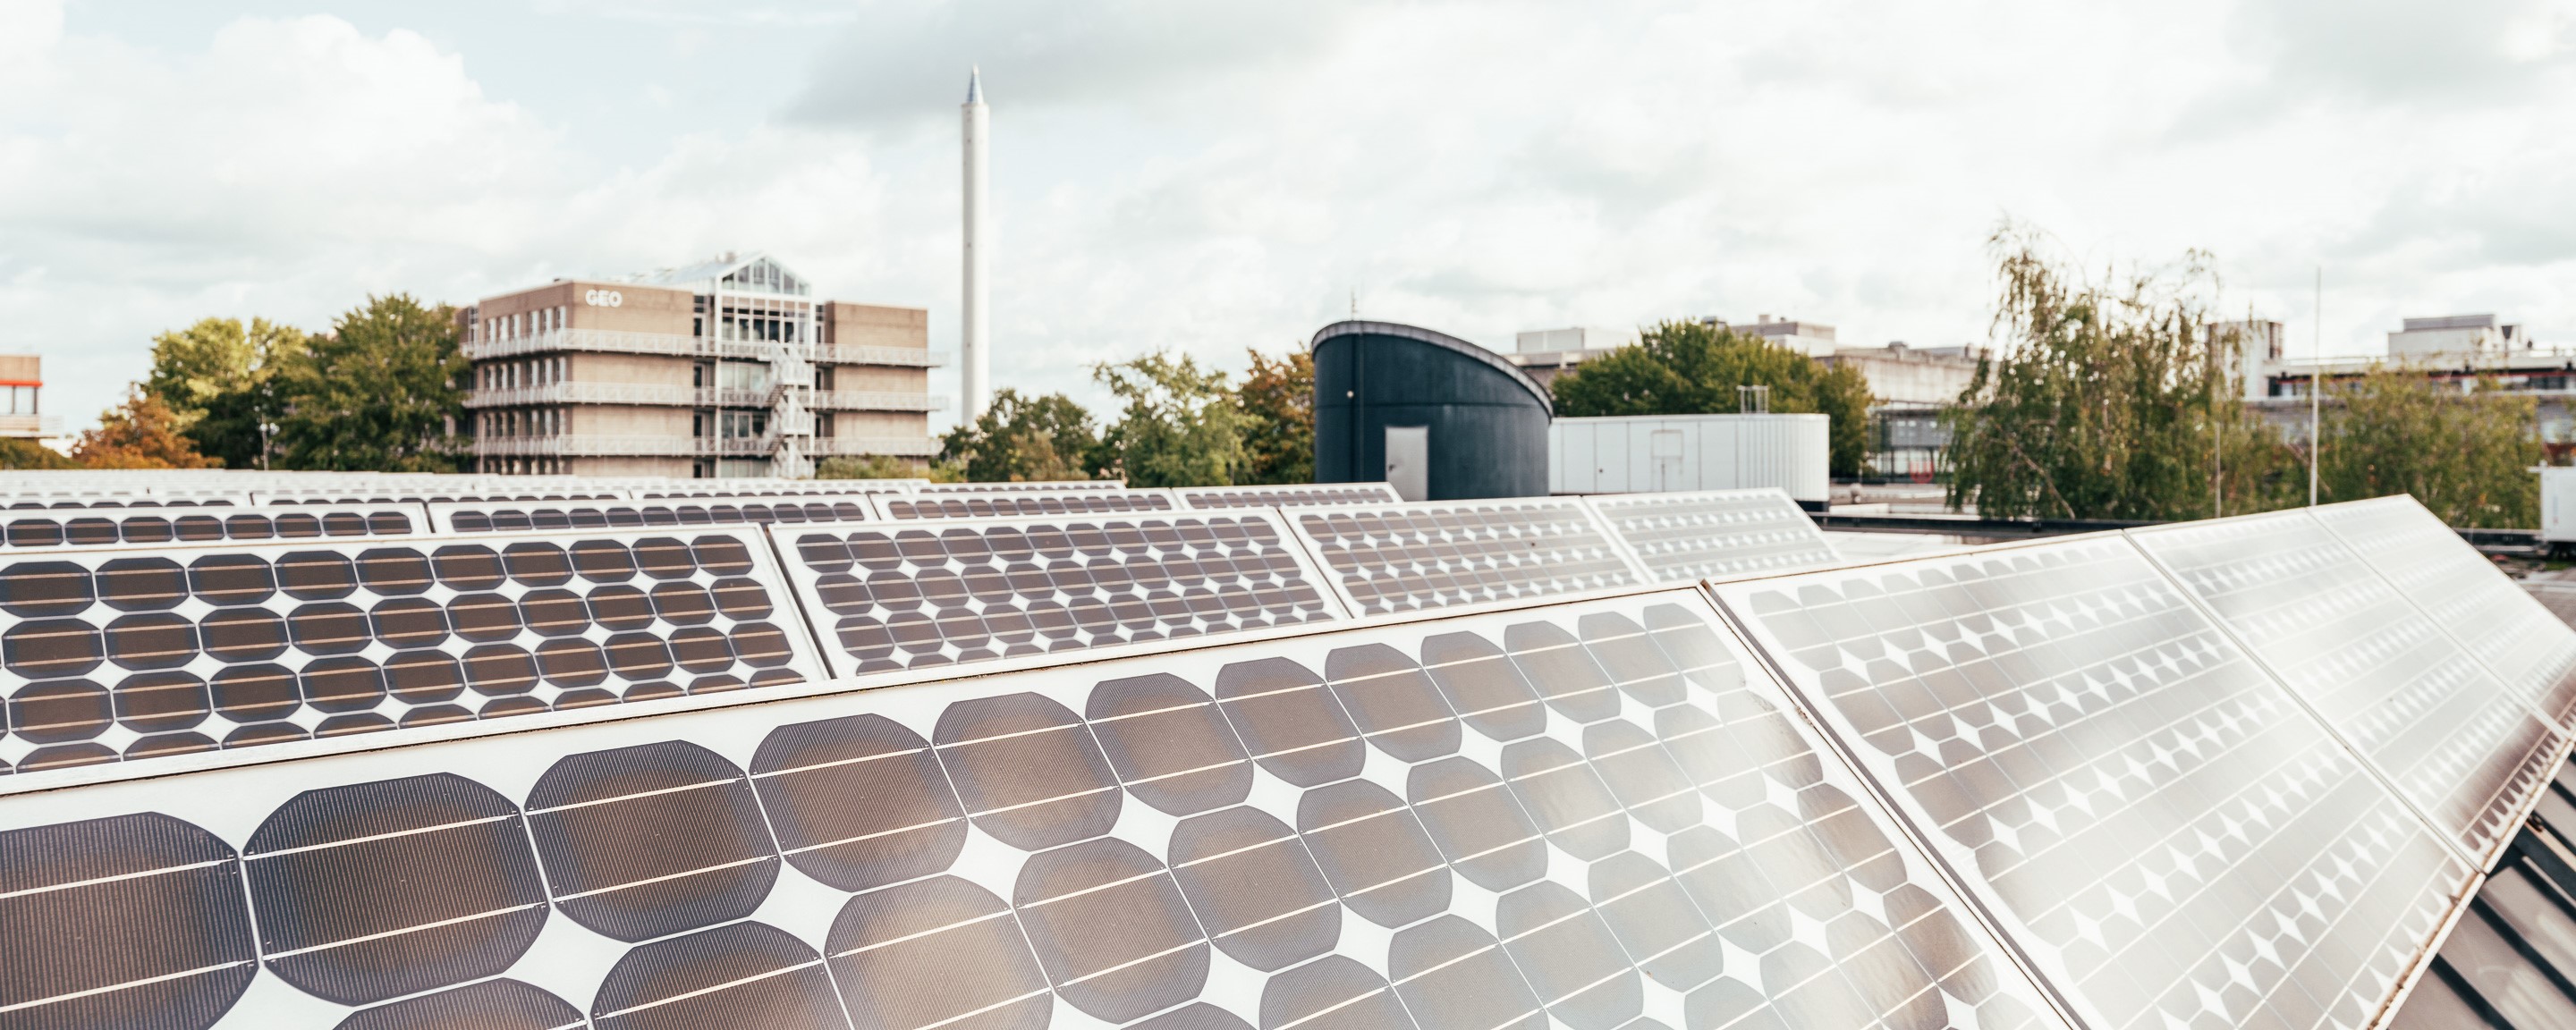 Mehrere Photovoltaikanlagen auf dem Dach der Mensa der Universität Bremen. Im Hintergrund sind Teile das Campus zu sehen